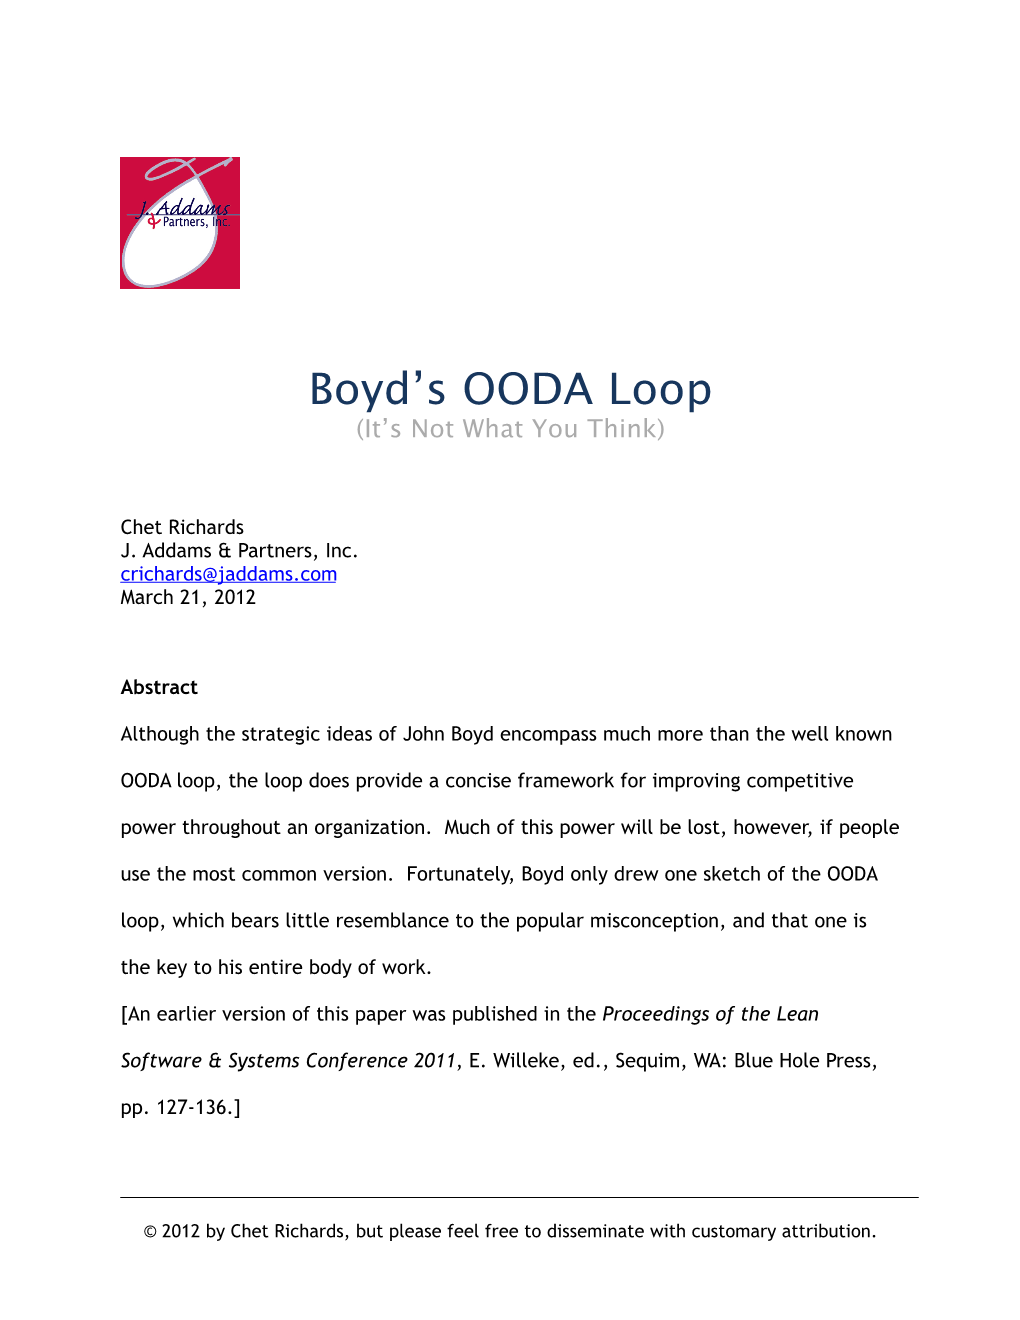 Boyd's Real OODA Loop